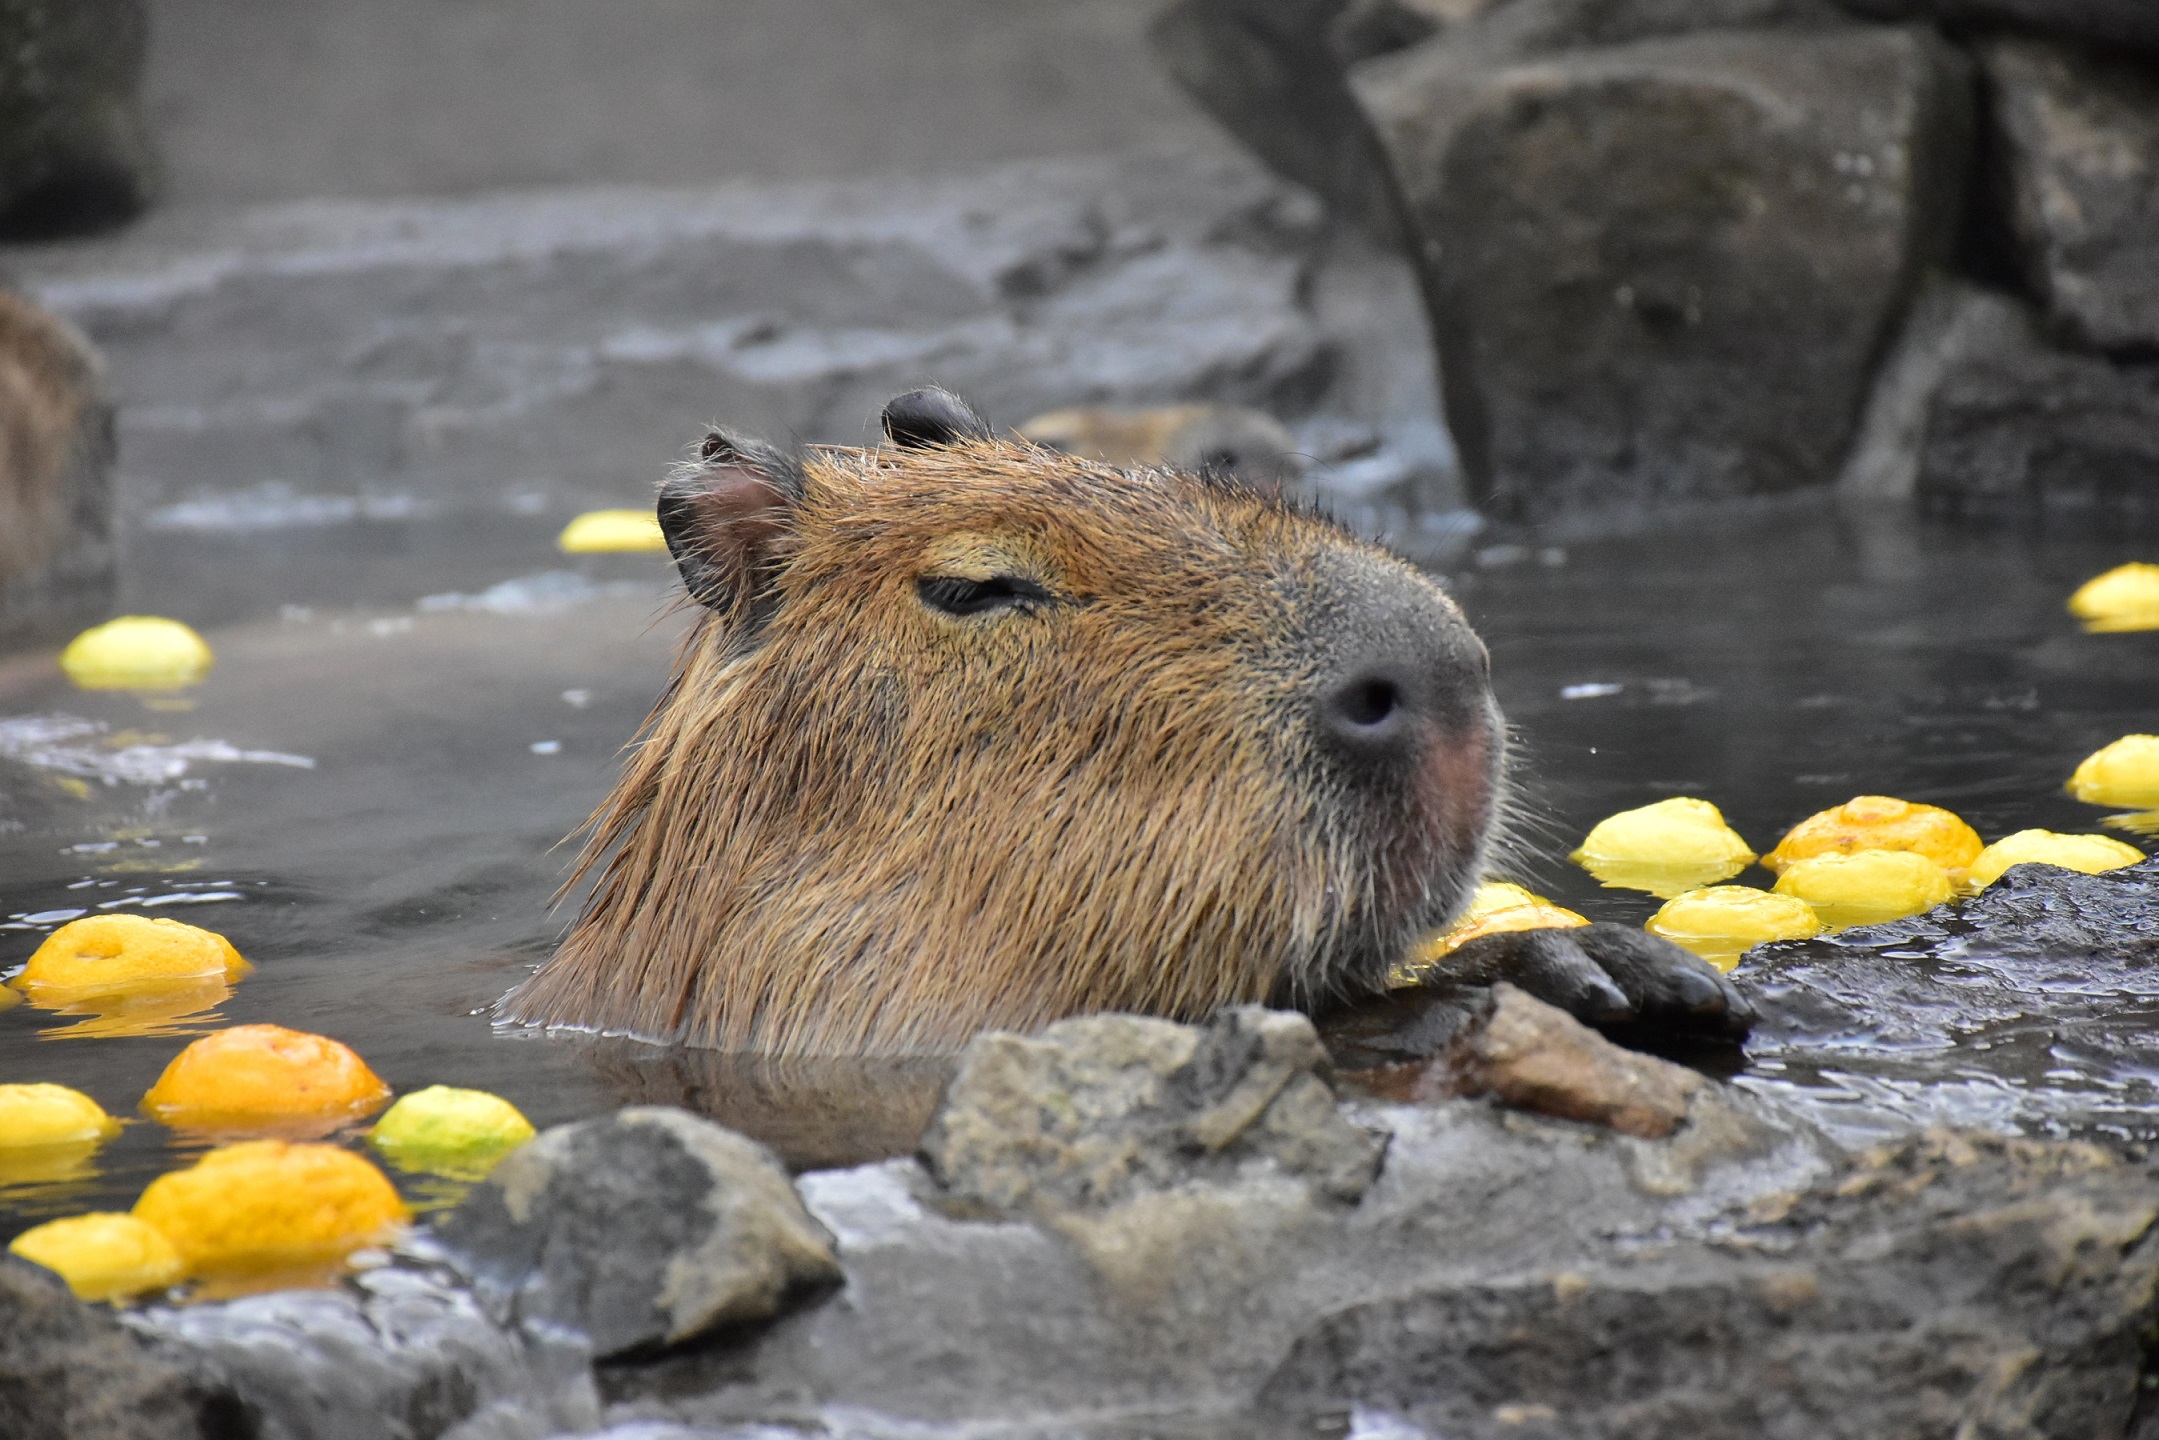 １２/２２（日）は冬至！期間限定 「カピバラのゆず湯」 を開催 | 伊豆シャボテン動物公園グループ | ご来園者の笑顔のために